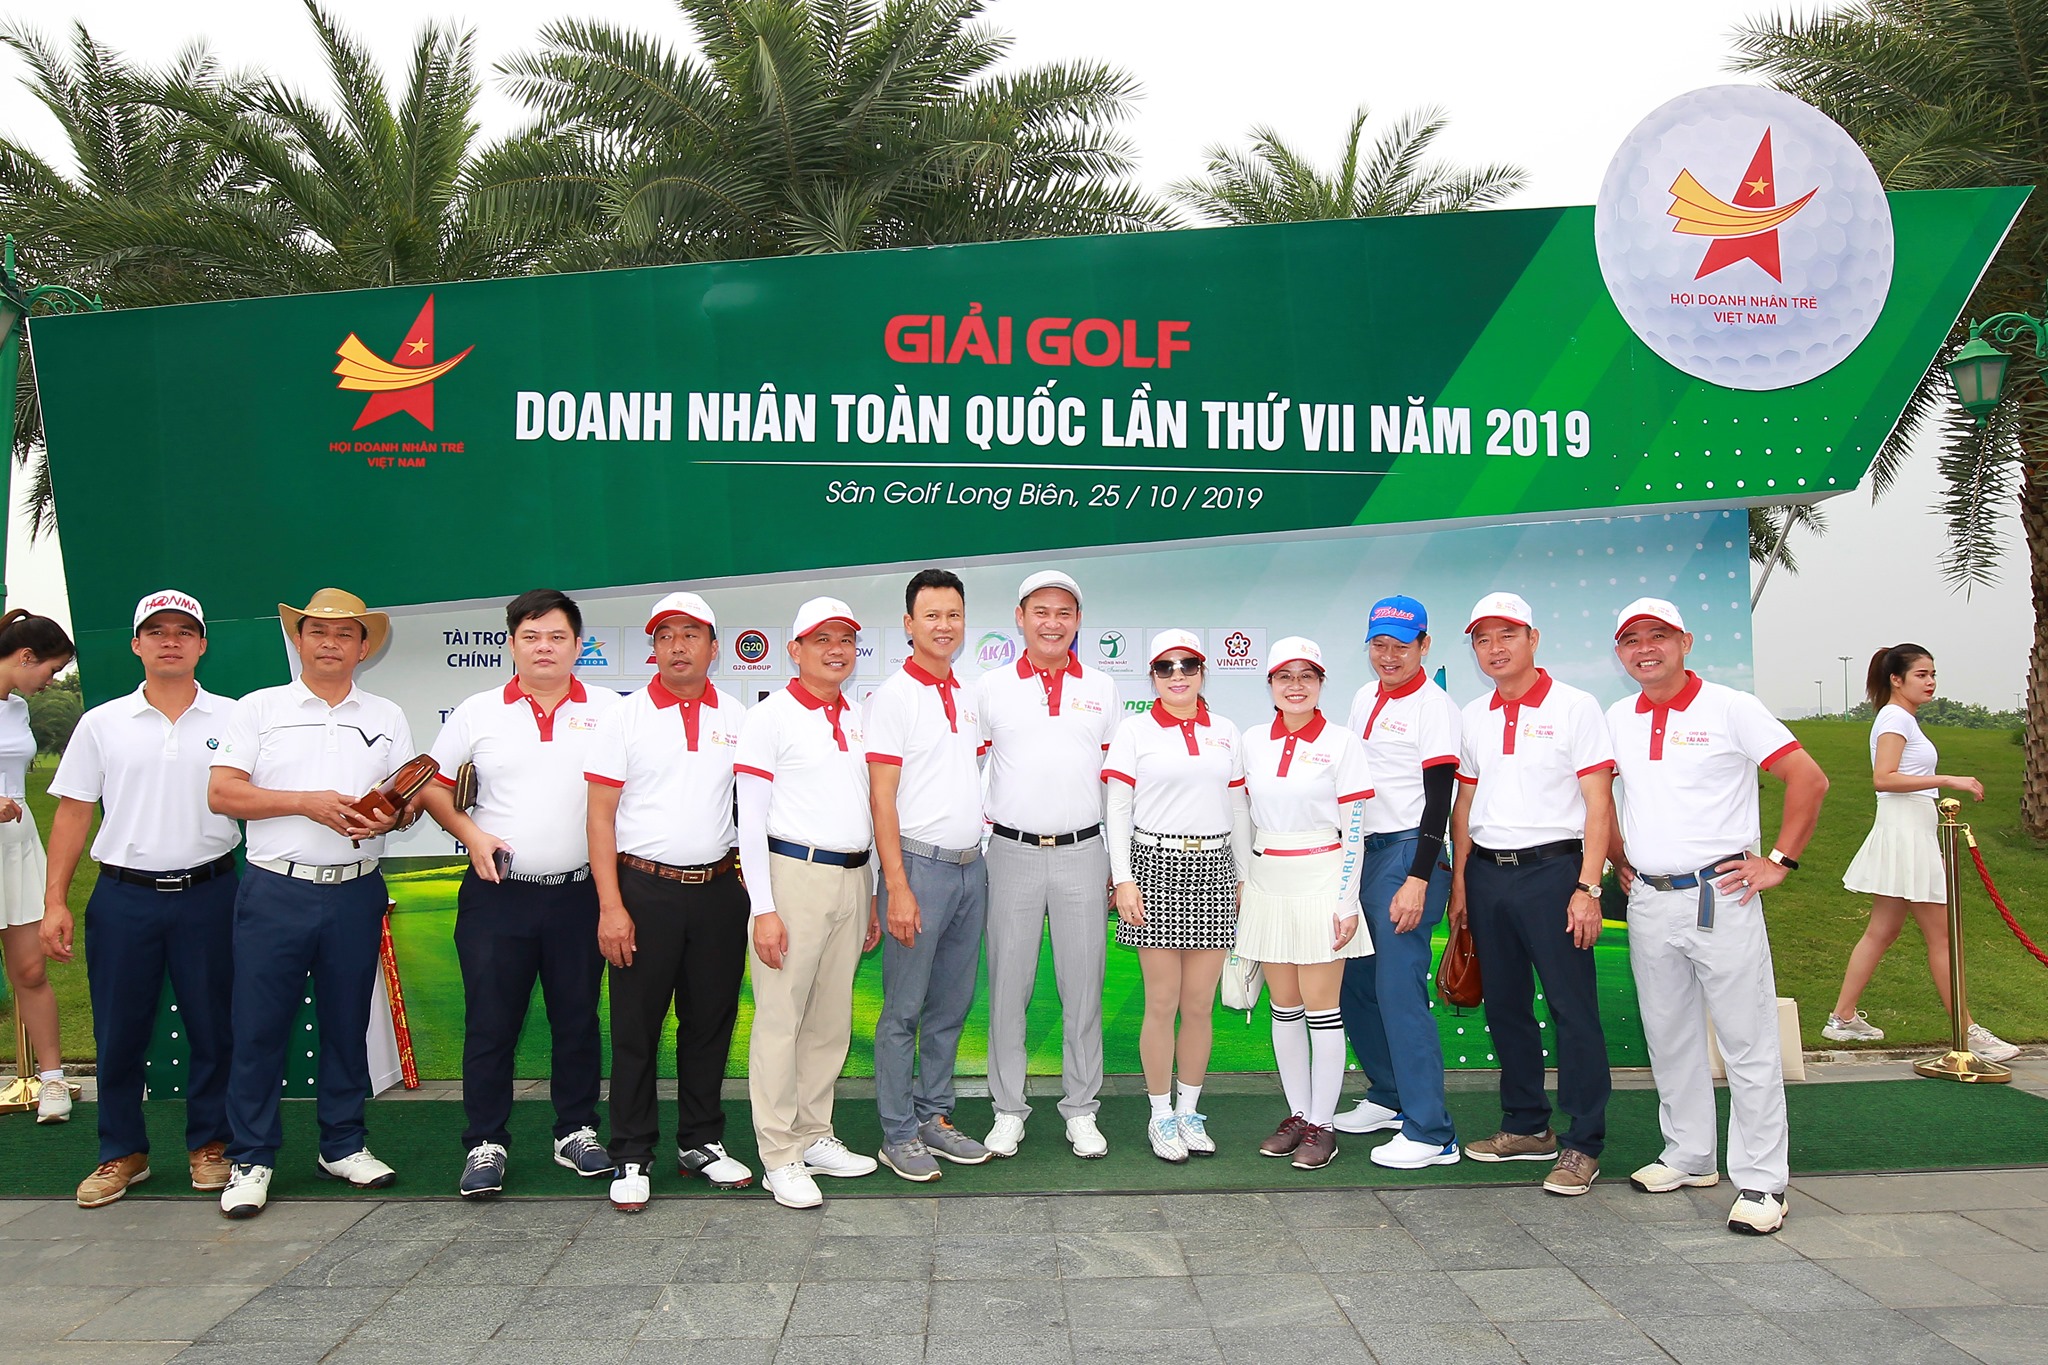 Giải Golf Doanh nhân trẻ toàn quốc lần này hội tụ rất nhiều golfer là những doanh nhân nổi tiếng